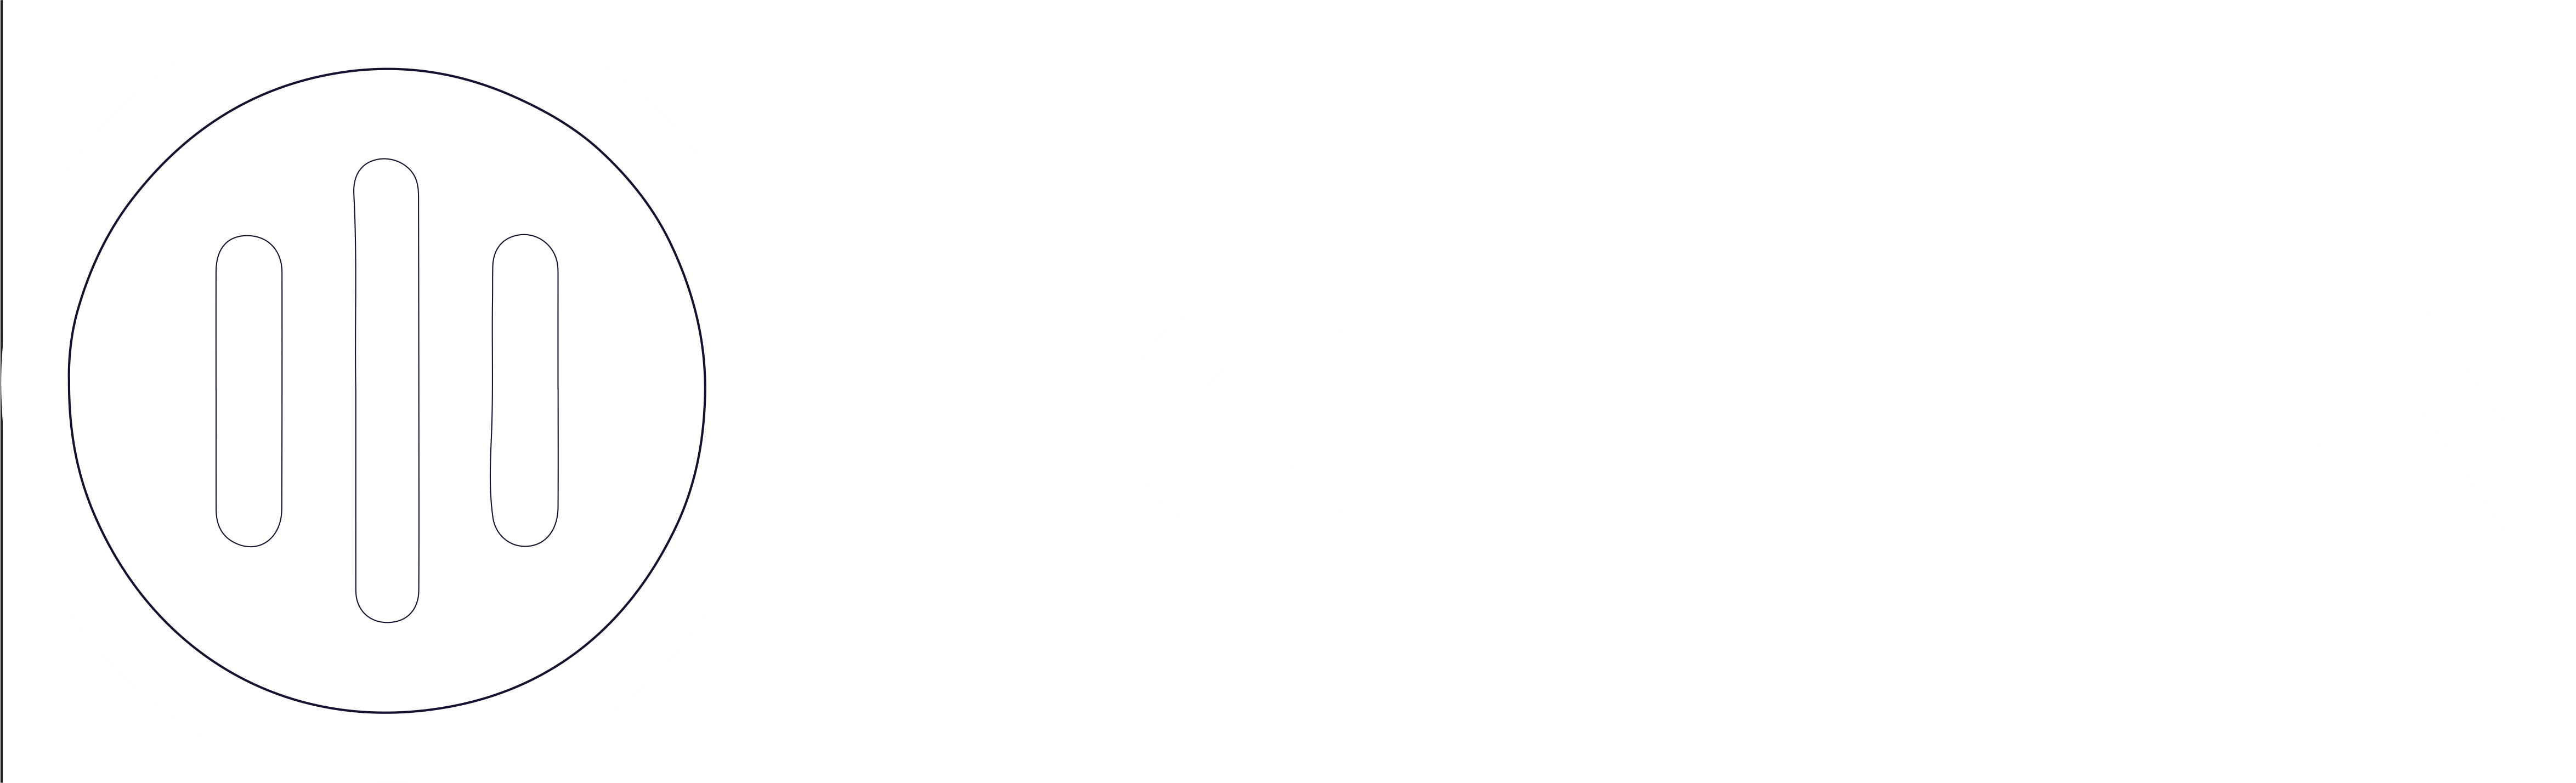 Light-Ten white text logo